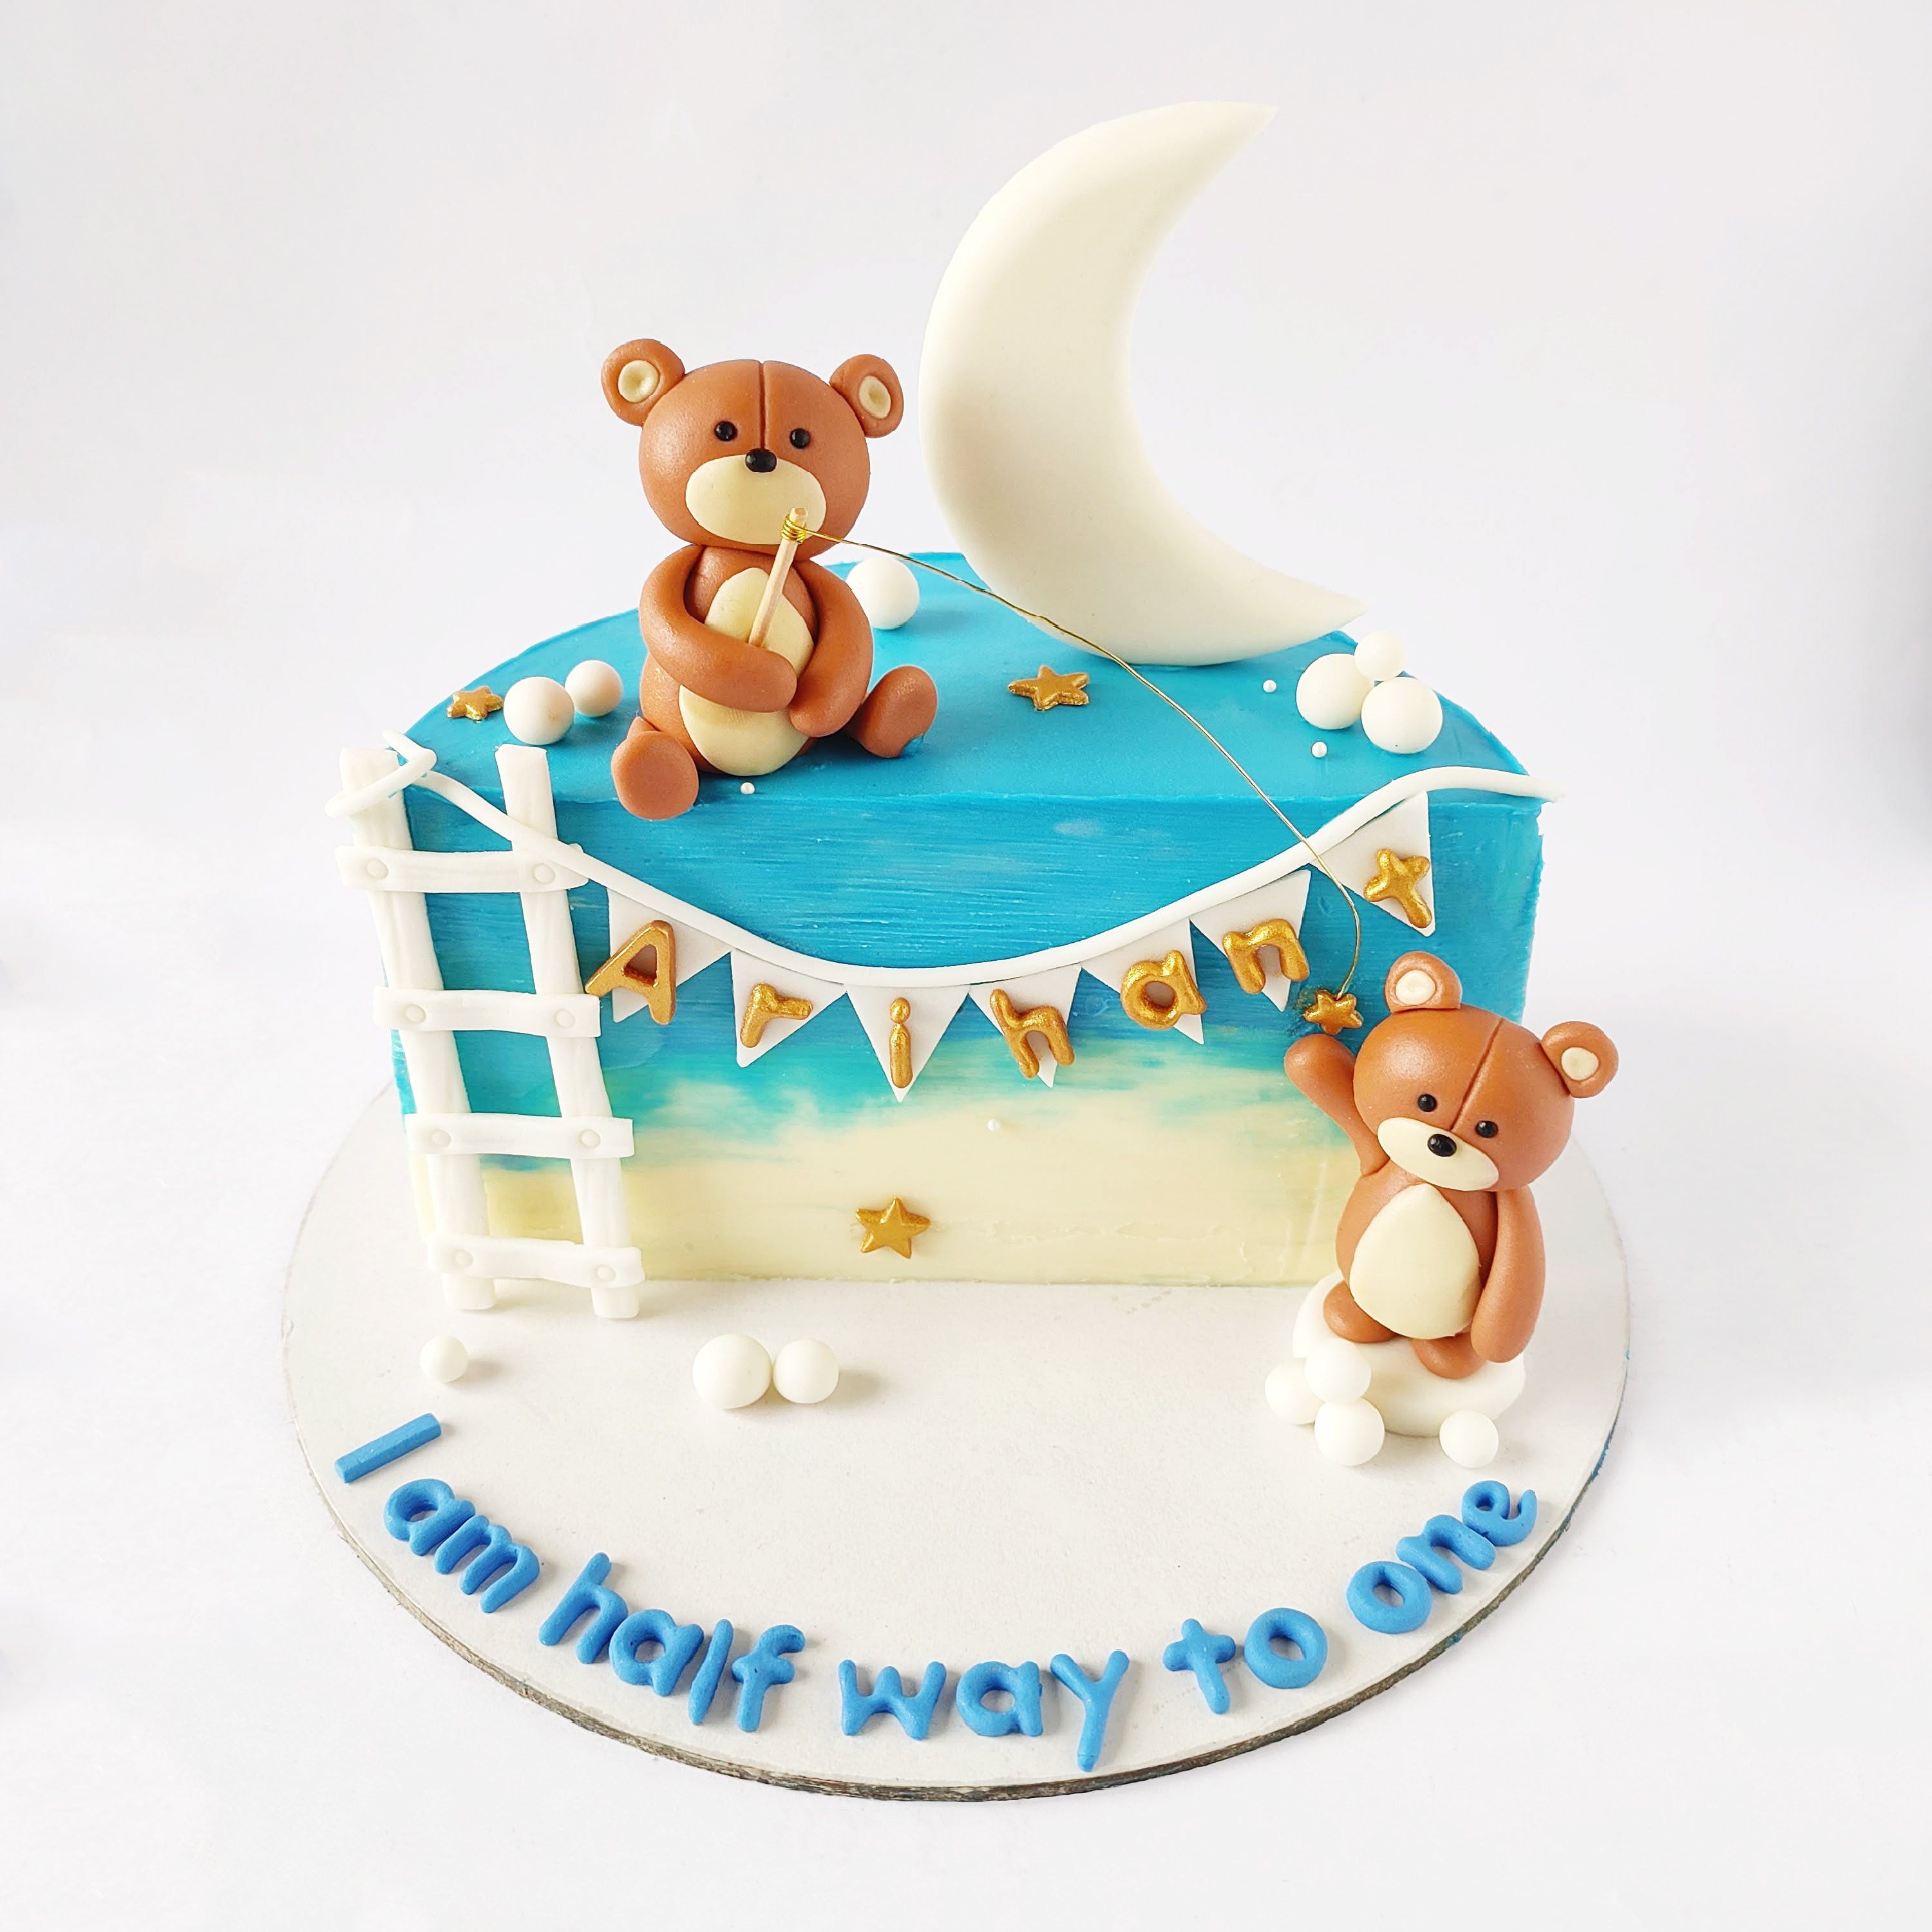 10 Trending Kids Birthday Cake Designs for Boys and Girls